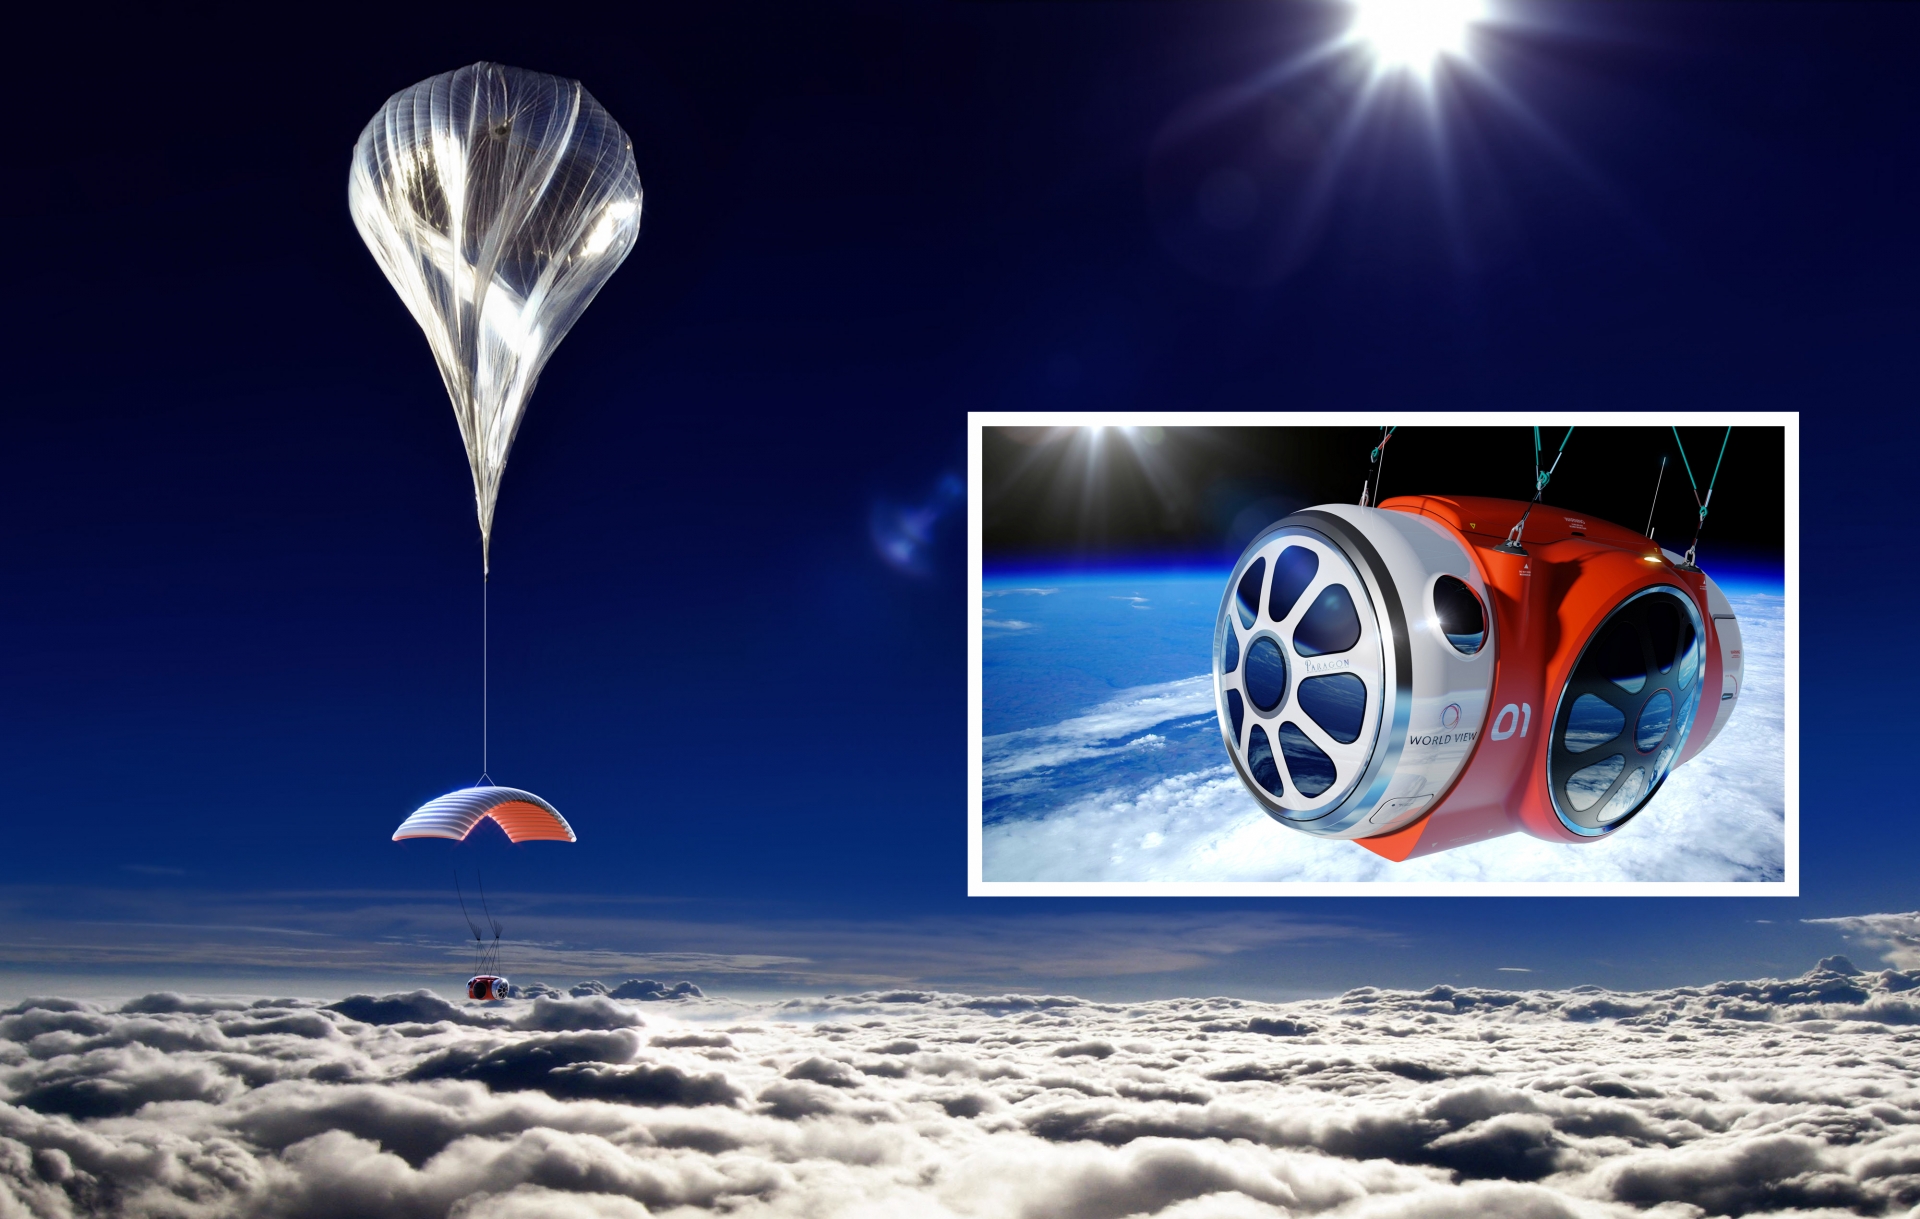 Tour du lịch vũ trụ giảm giá hơn một nửa, khám phá không gian bằng khinh khí cầu chỉ với 1.2 tỷ - Ảnh 2